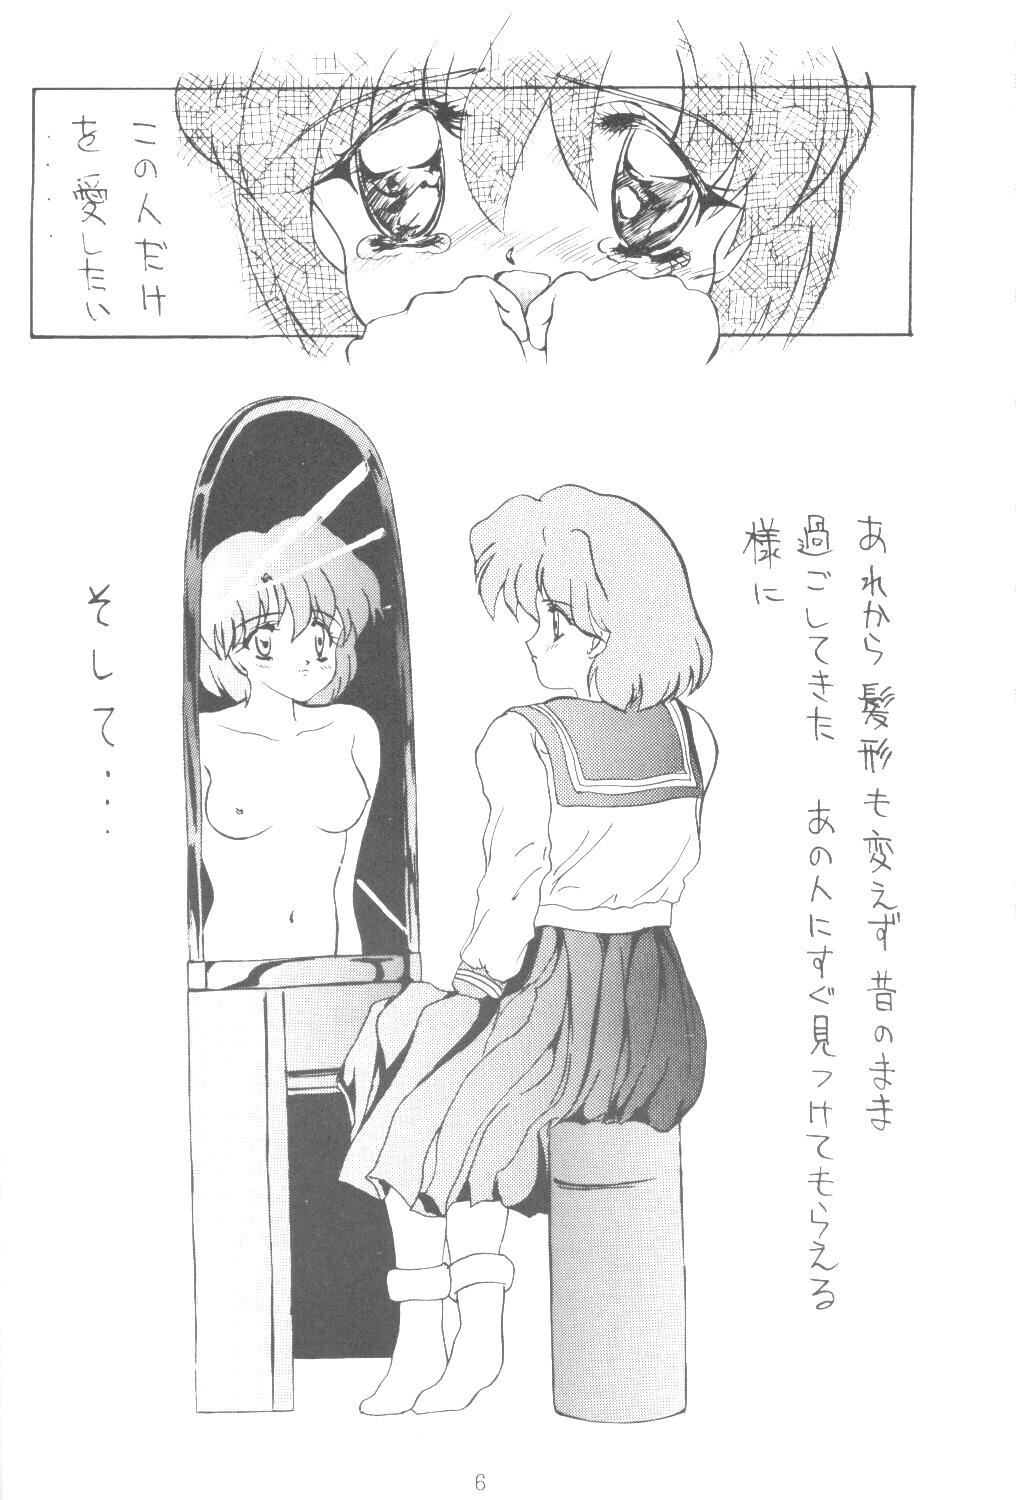 Nurumassage ALIVE AMI LOST - Sailor moon Ejaculation - Page 5